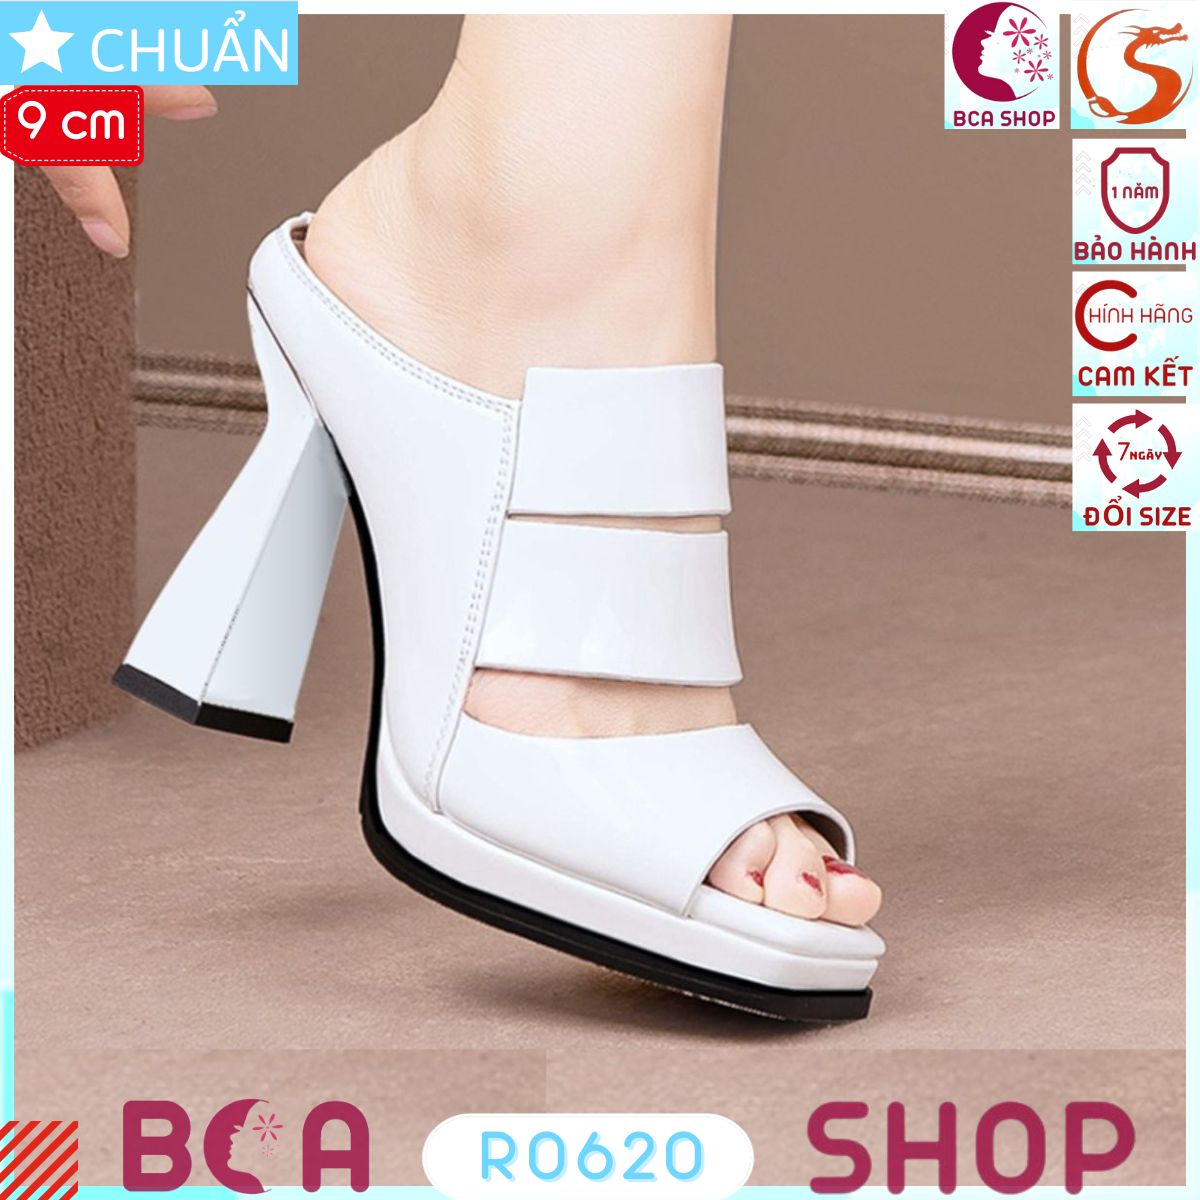 Giày sabo nữ 9p RO620 trắng ROSATA tại BCASHOP thiết kế bề mặt bóng sang trọng và lớp trong êm ái là 1 mẫu siêu sang